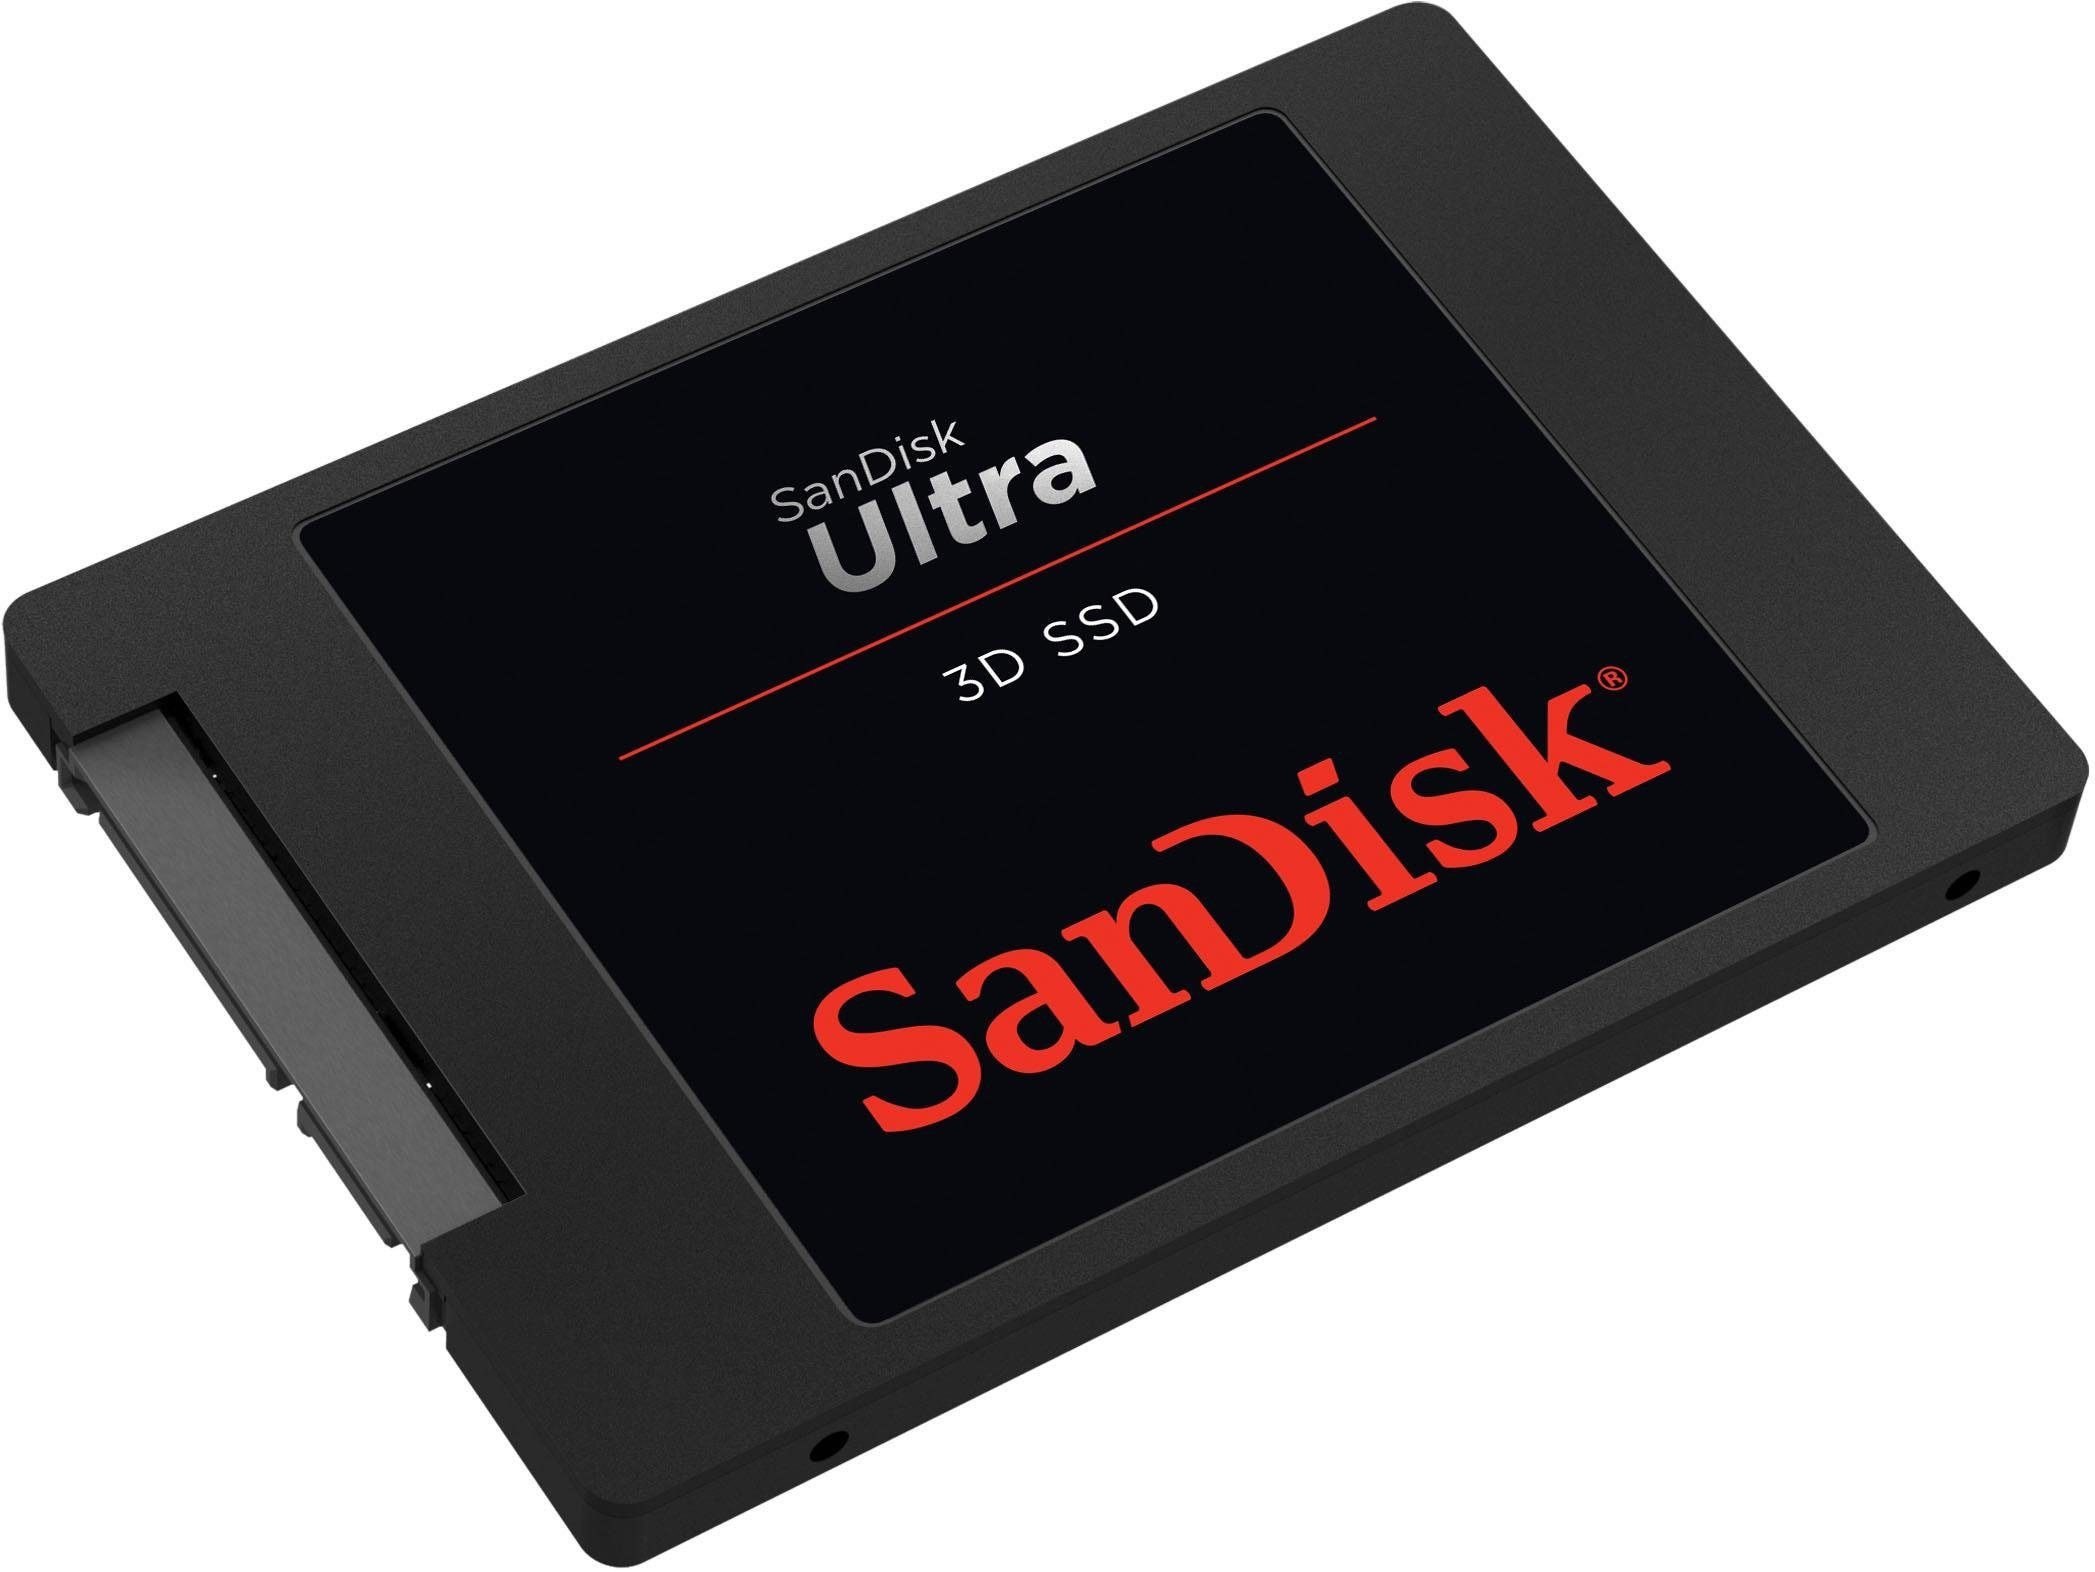 Sandisk interne SSD »Ultra 3D«, 2,5 Zoll, Anschluss SATA